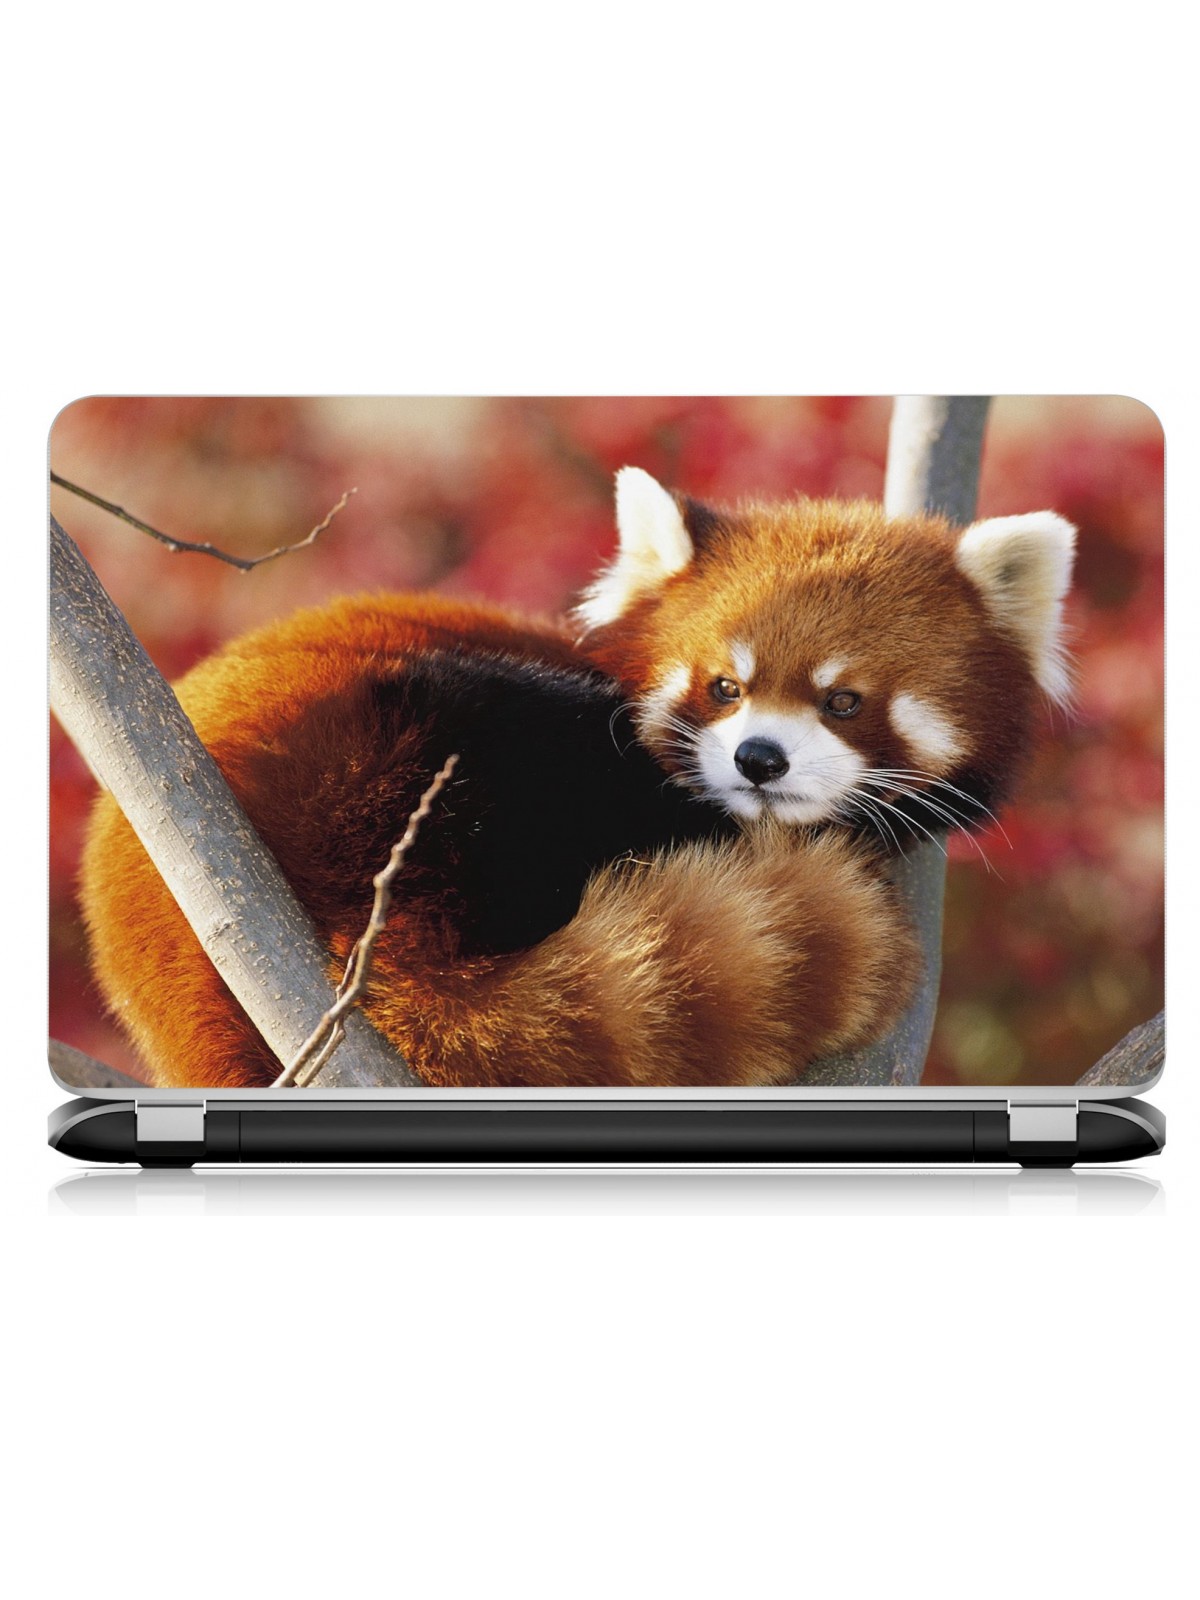 Stickers Autocollants ordinateur portable PC Panda roux